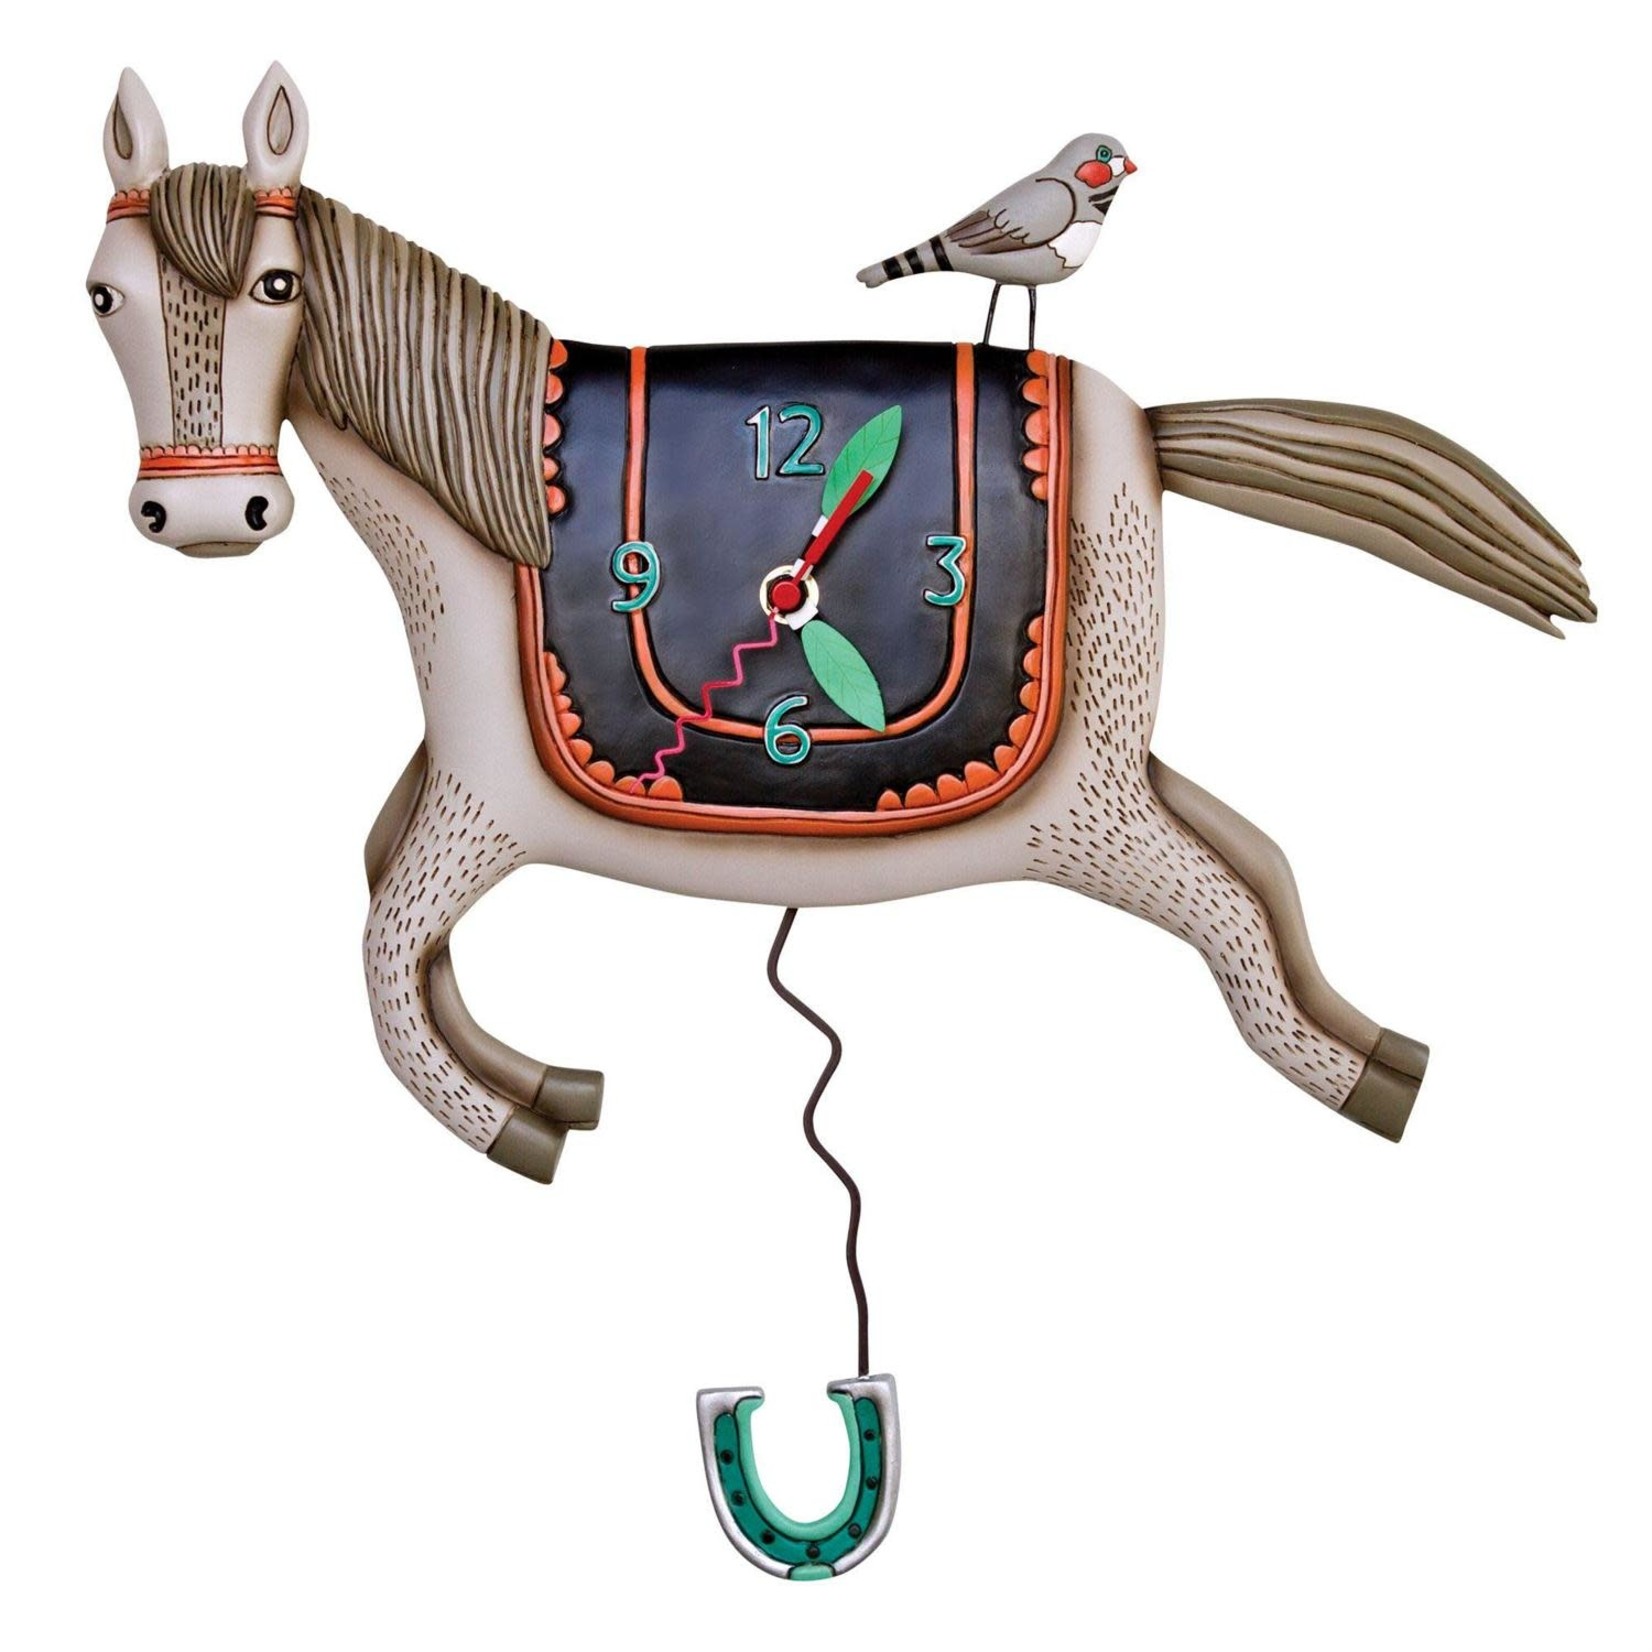 ALLEN DESIGN CLOCK WOAH HORSEY P1602